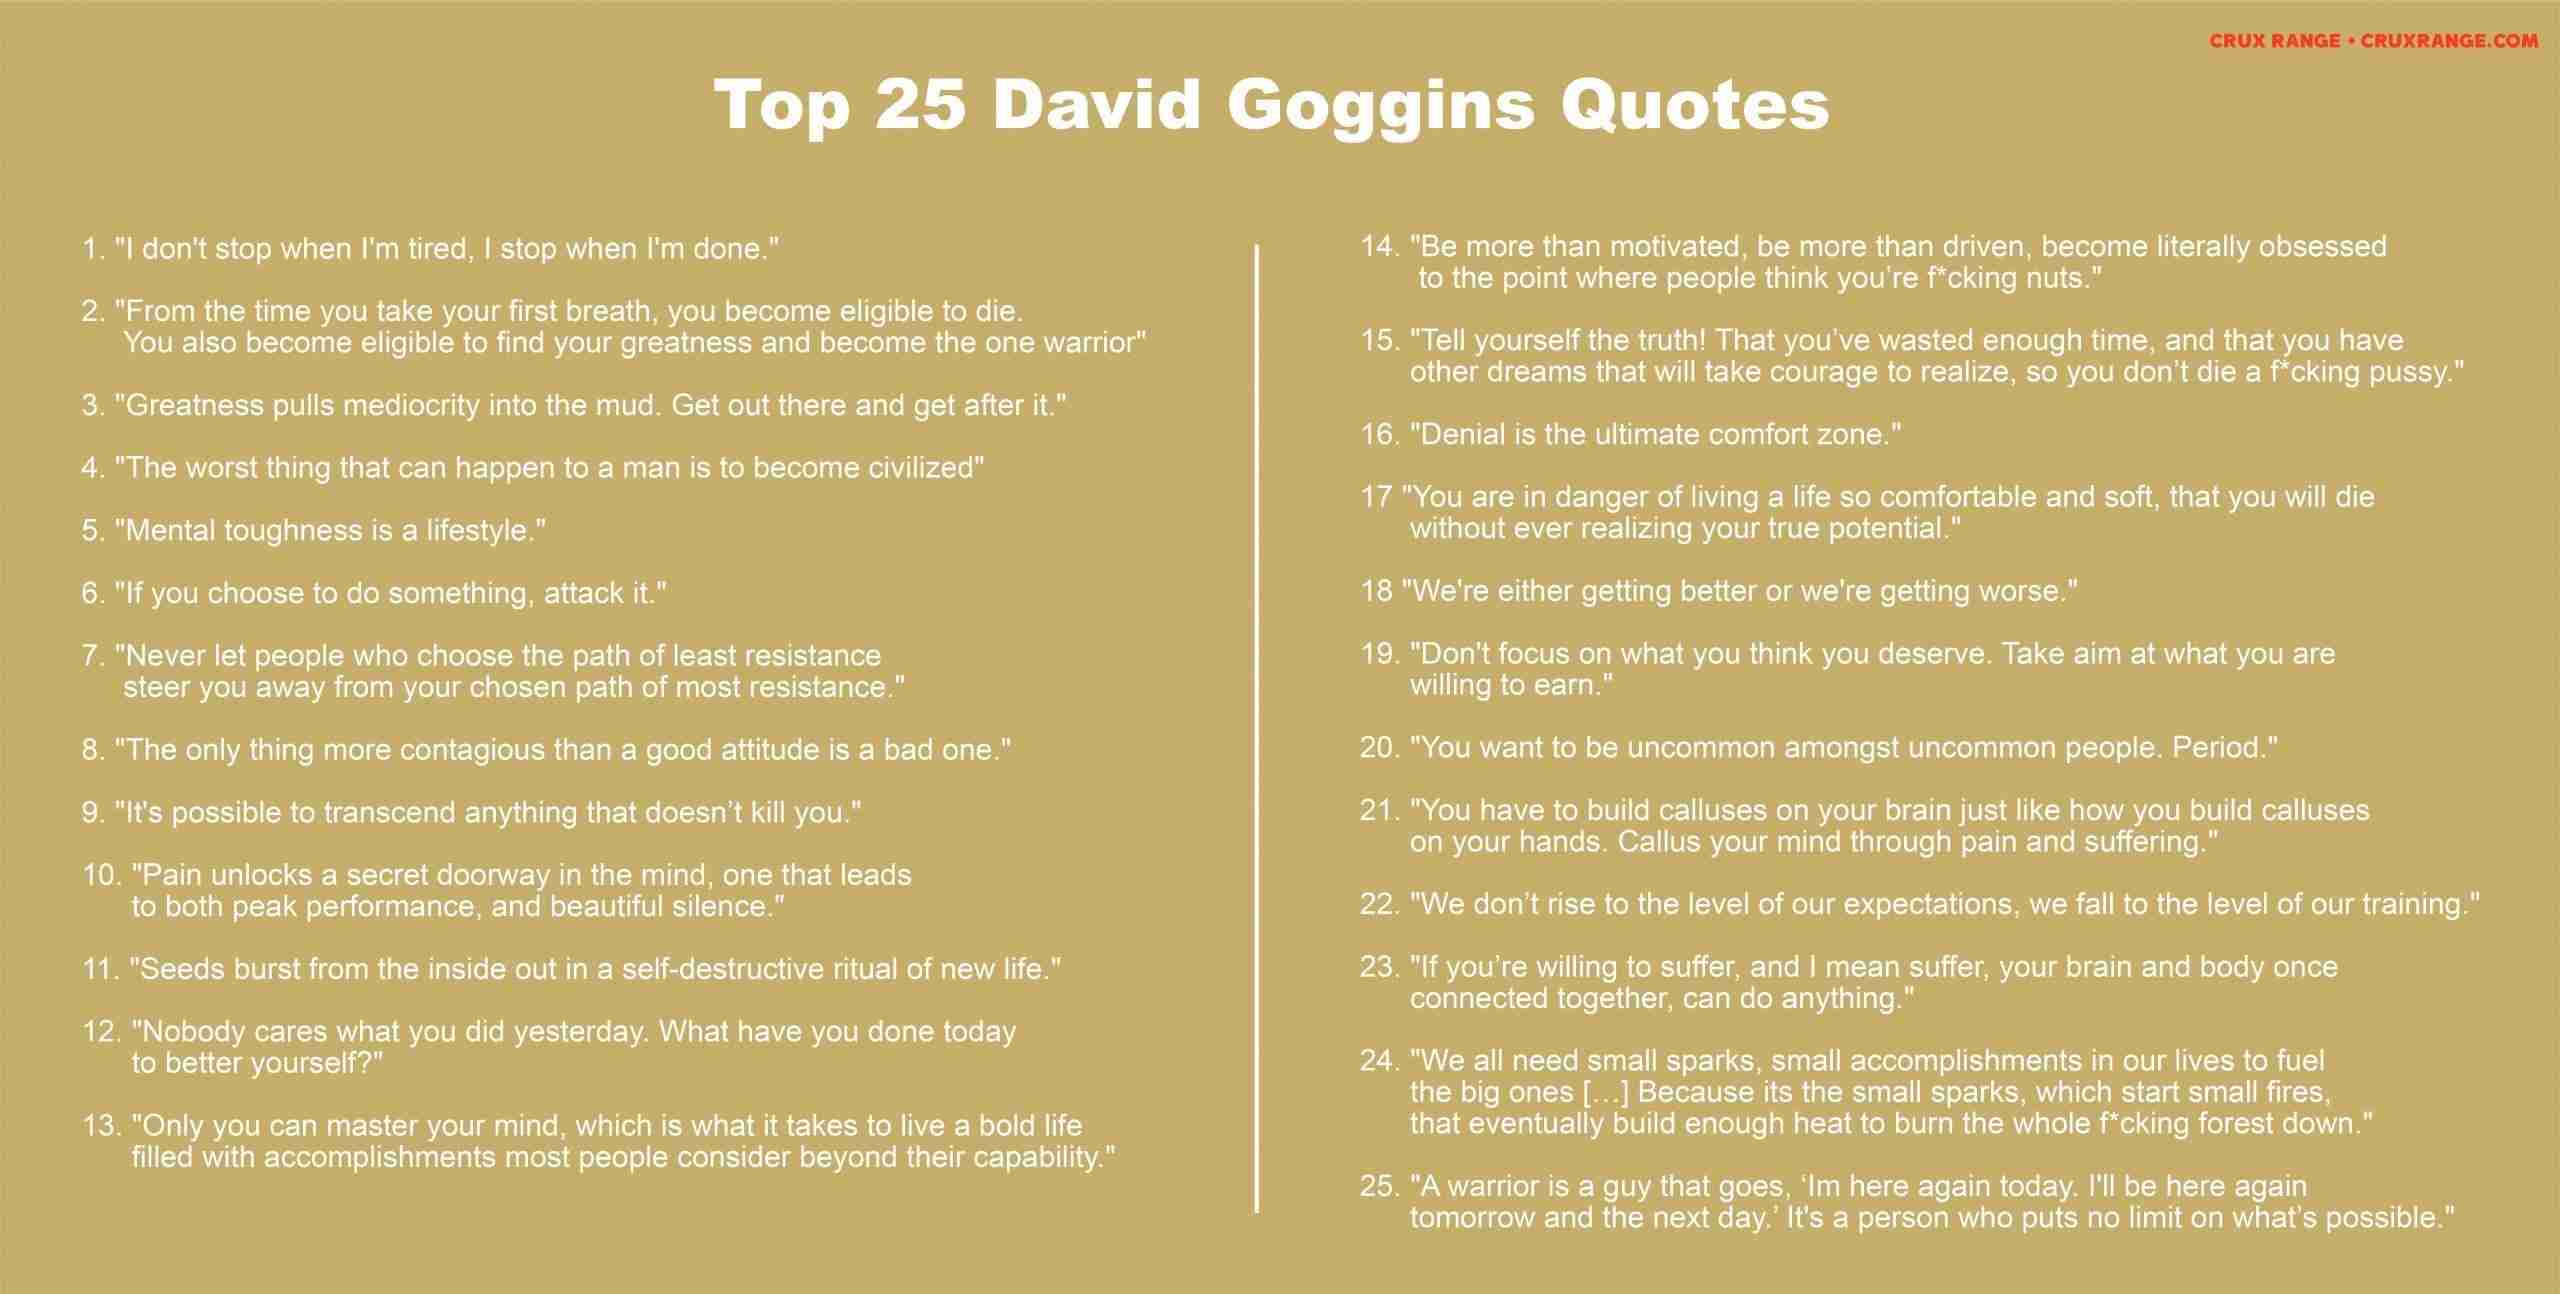 Wallpaper David Goggins Quotes Wallpapers